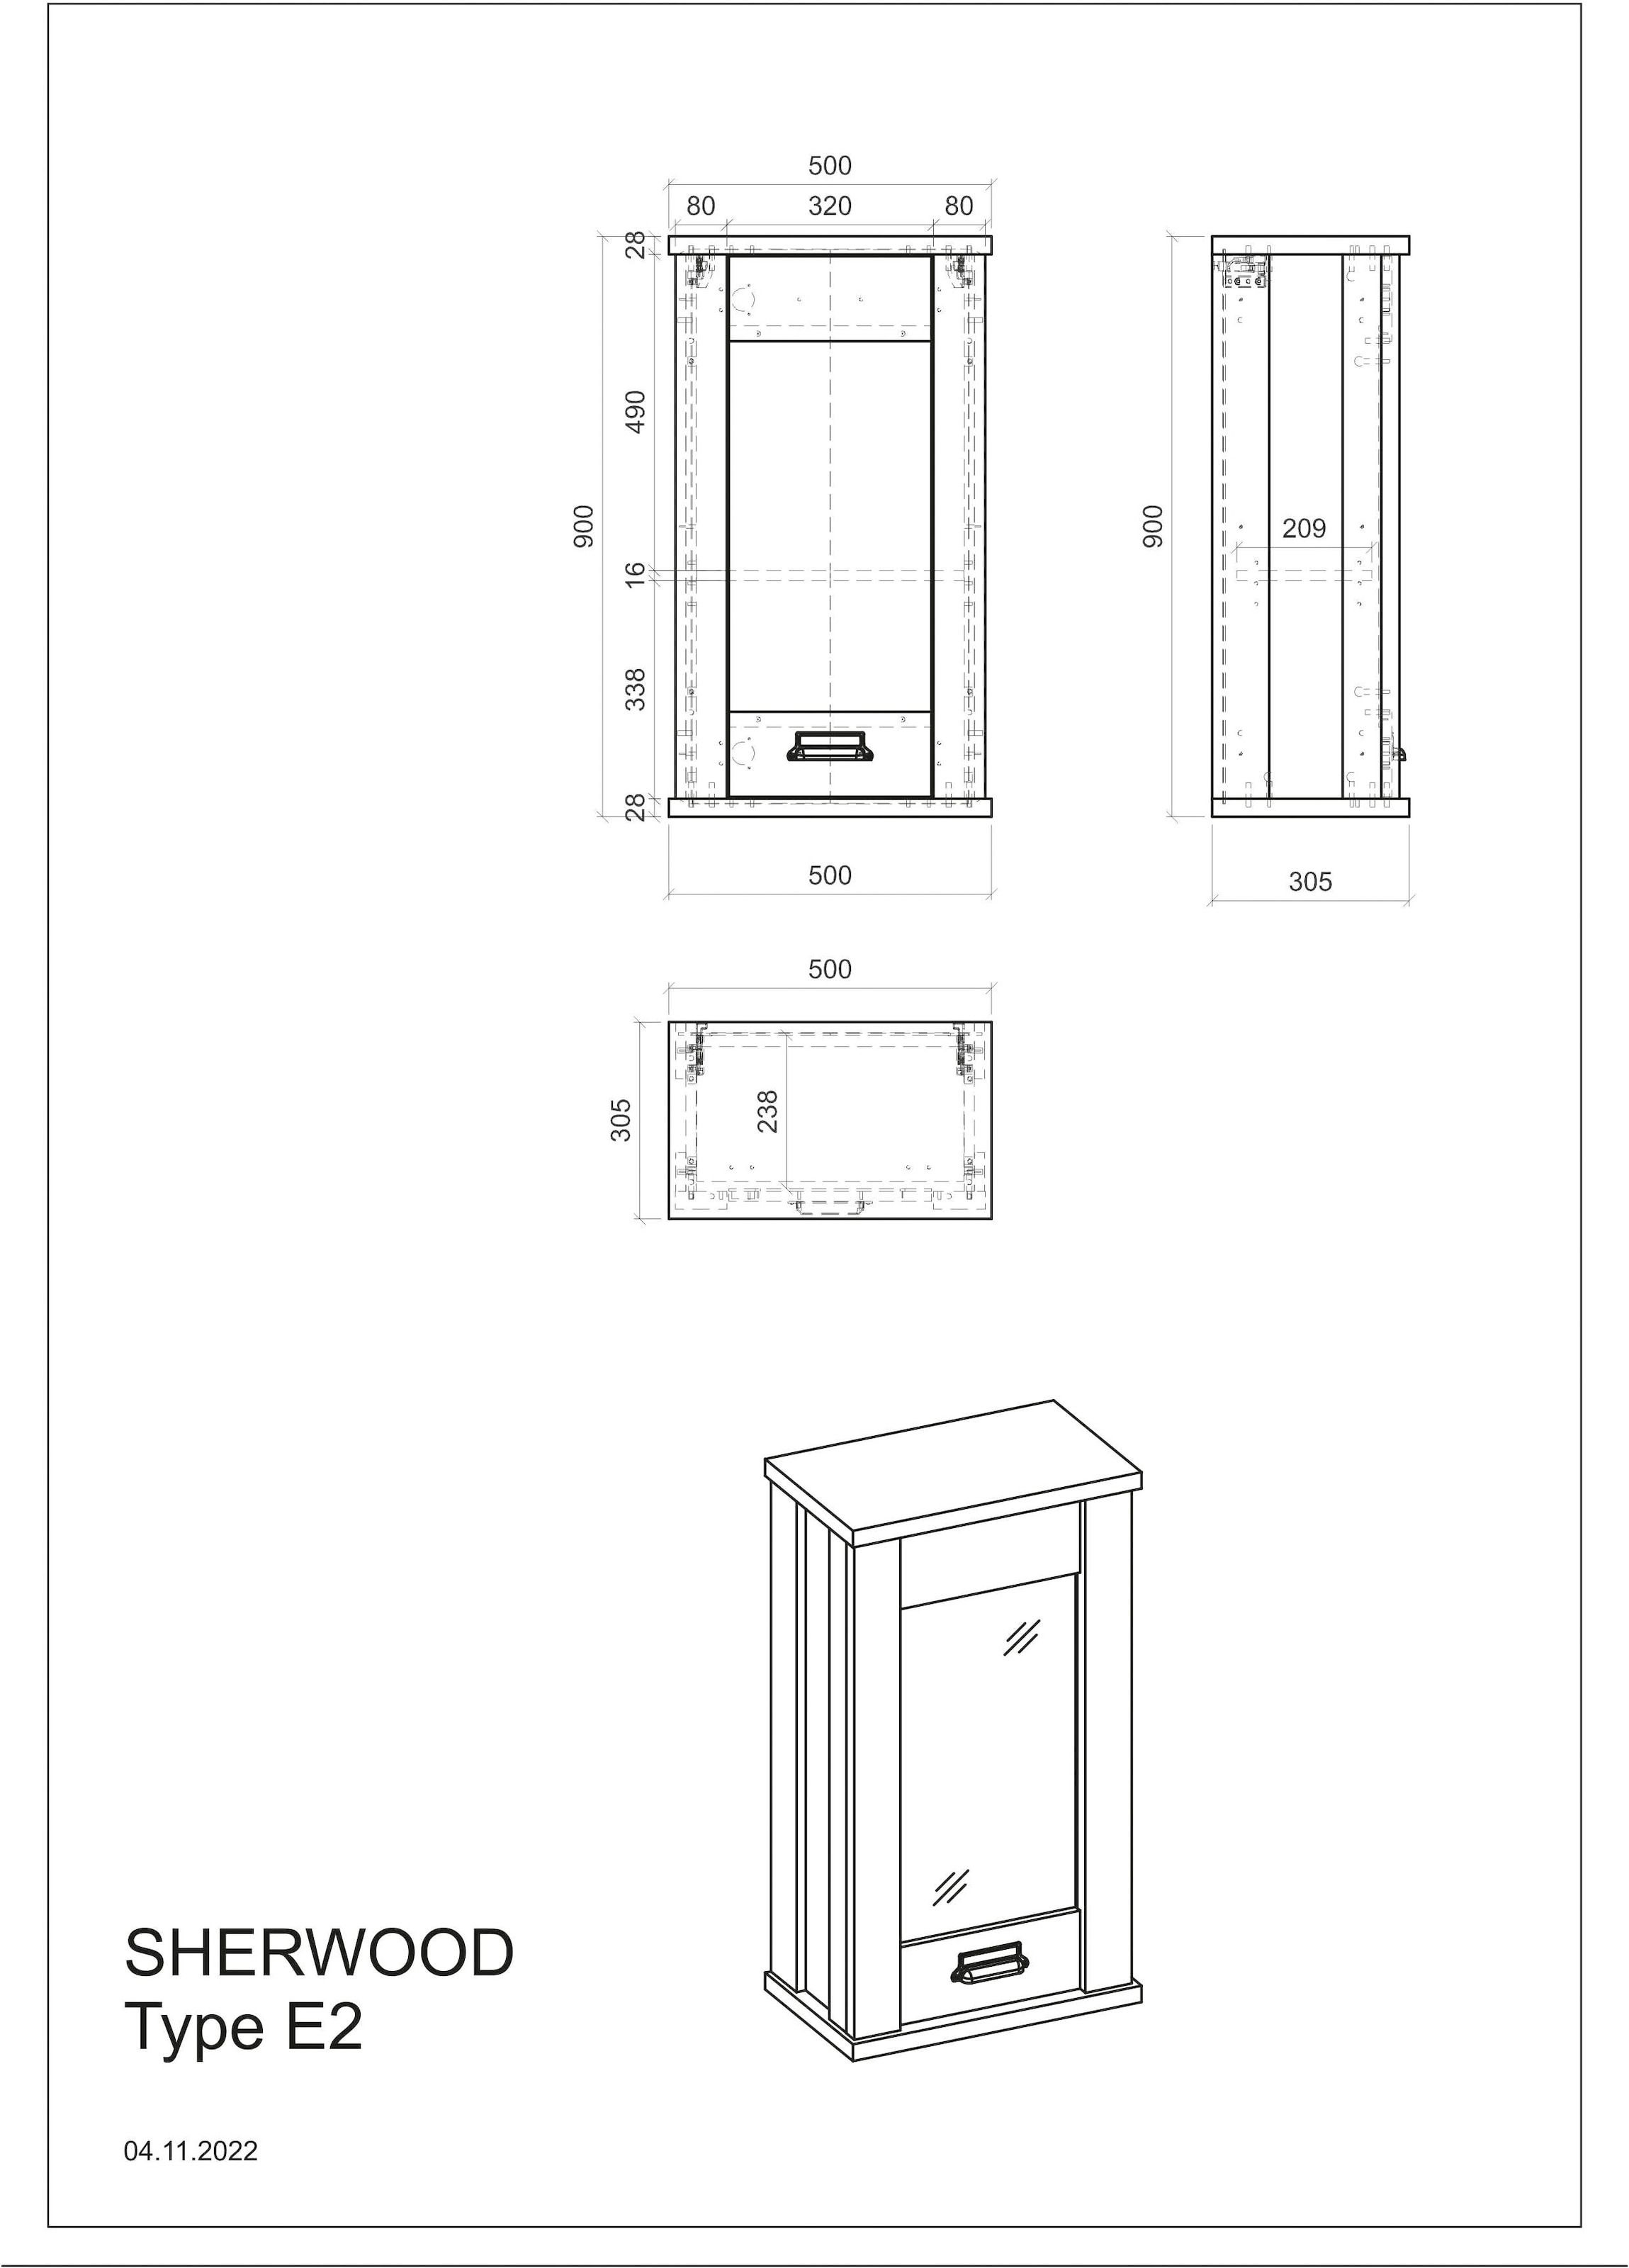 Home affaire Küchenzeile »Sherwood«, Breite 284 cm, mit Herdumbauschrank, ohne E-Geräte